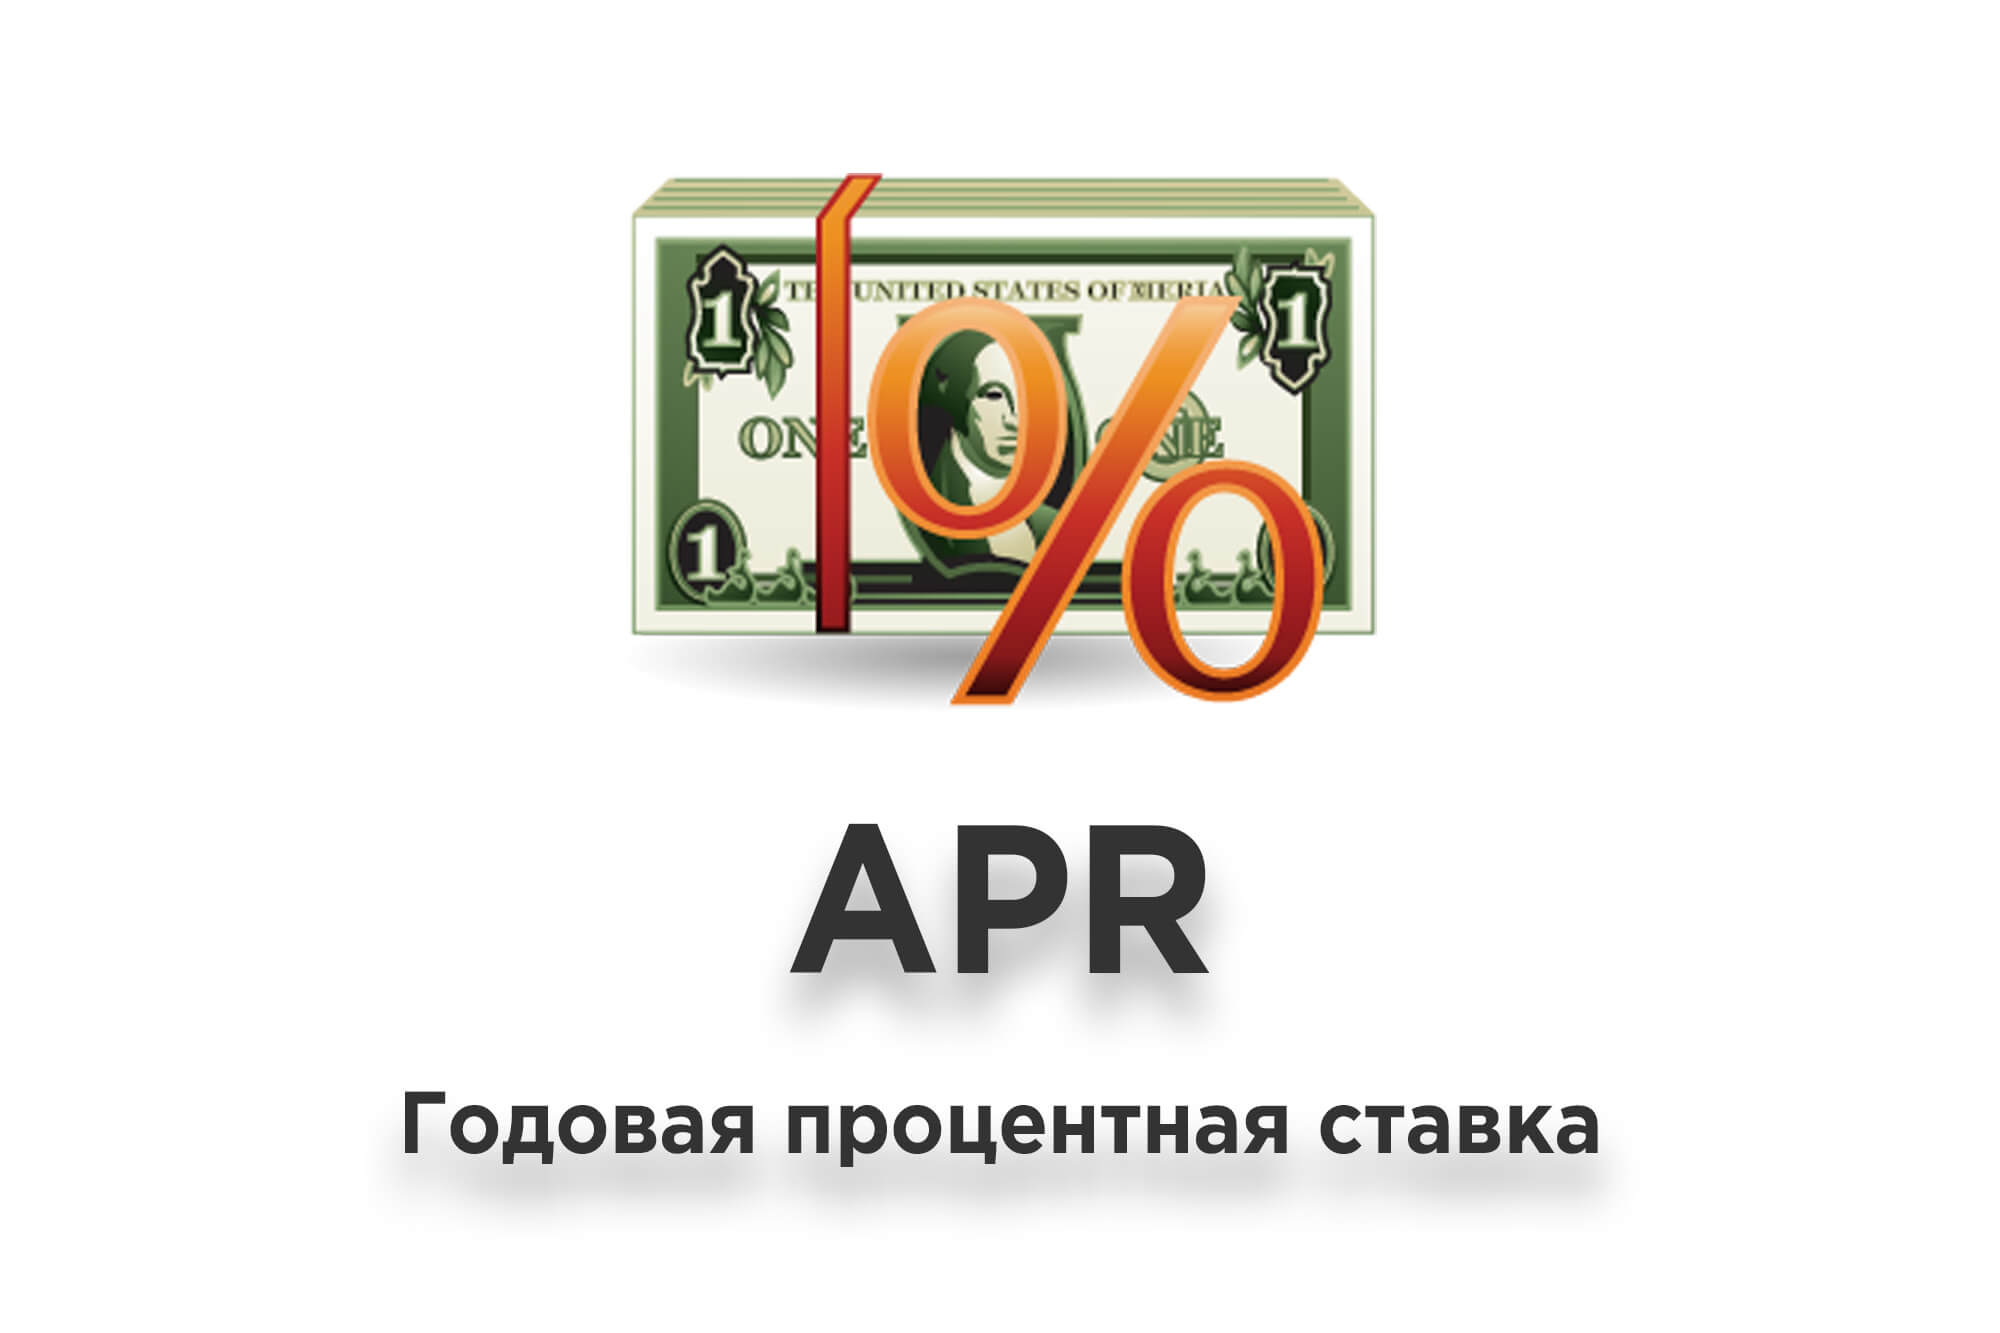 Что такое APR (годовая процентная ставка)?